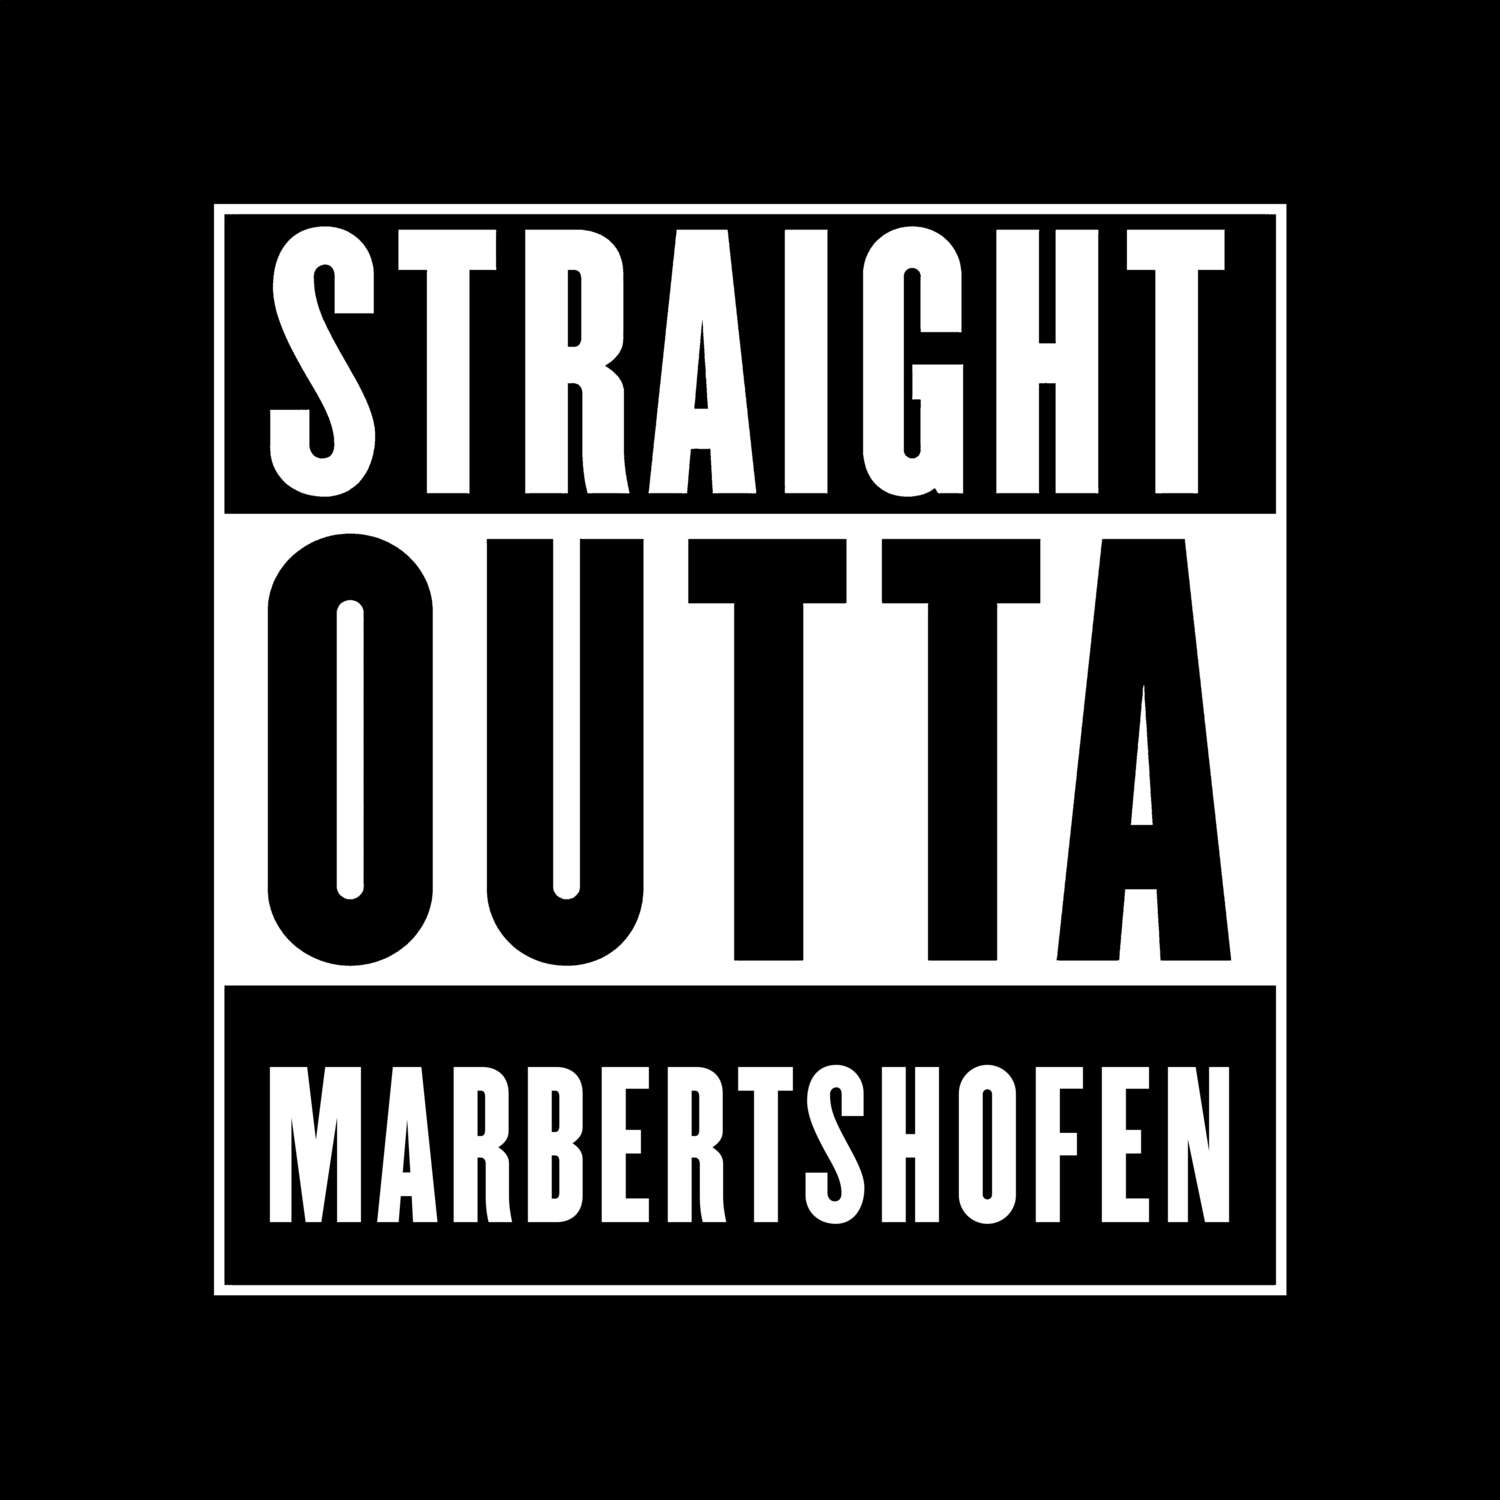 Marbertshofen T-Shirt »Straight Outta«